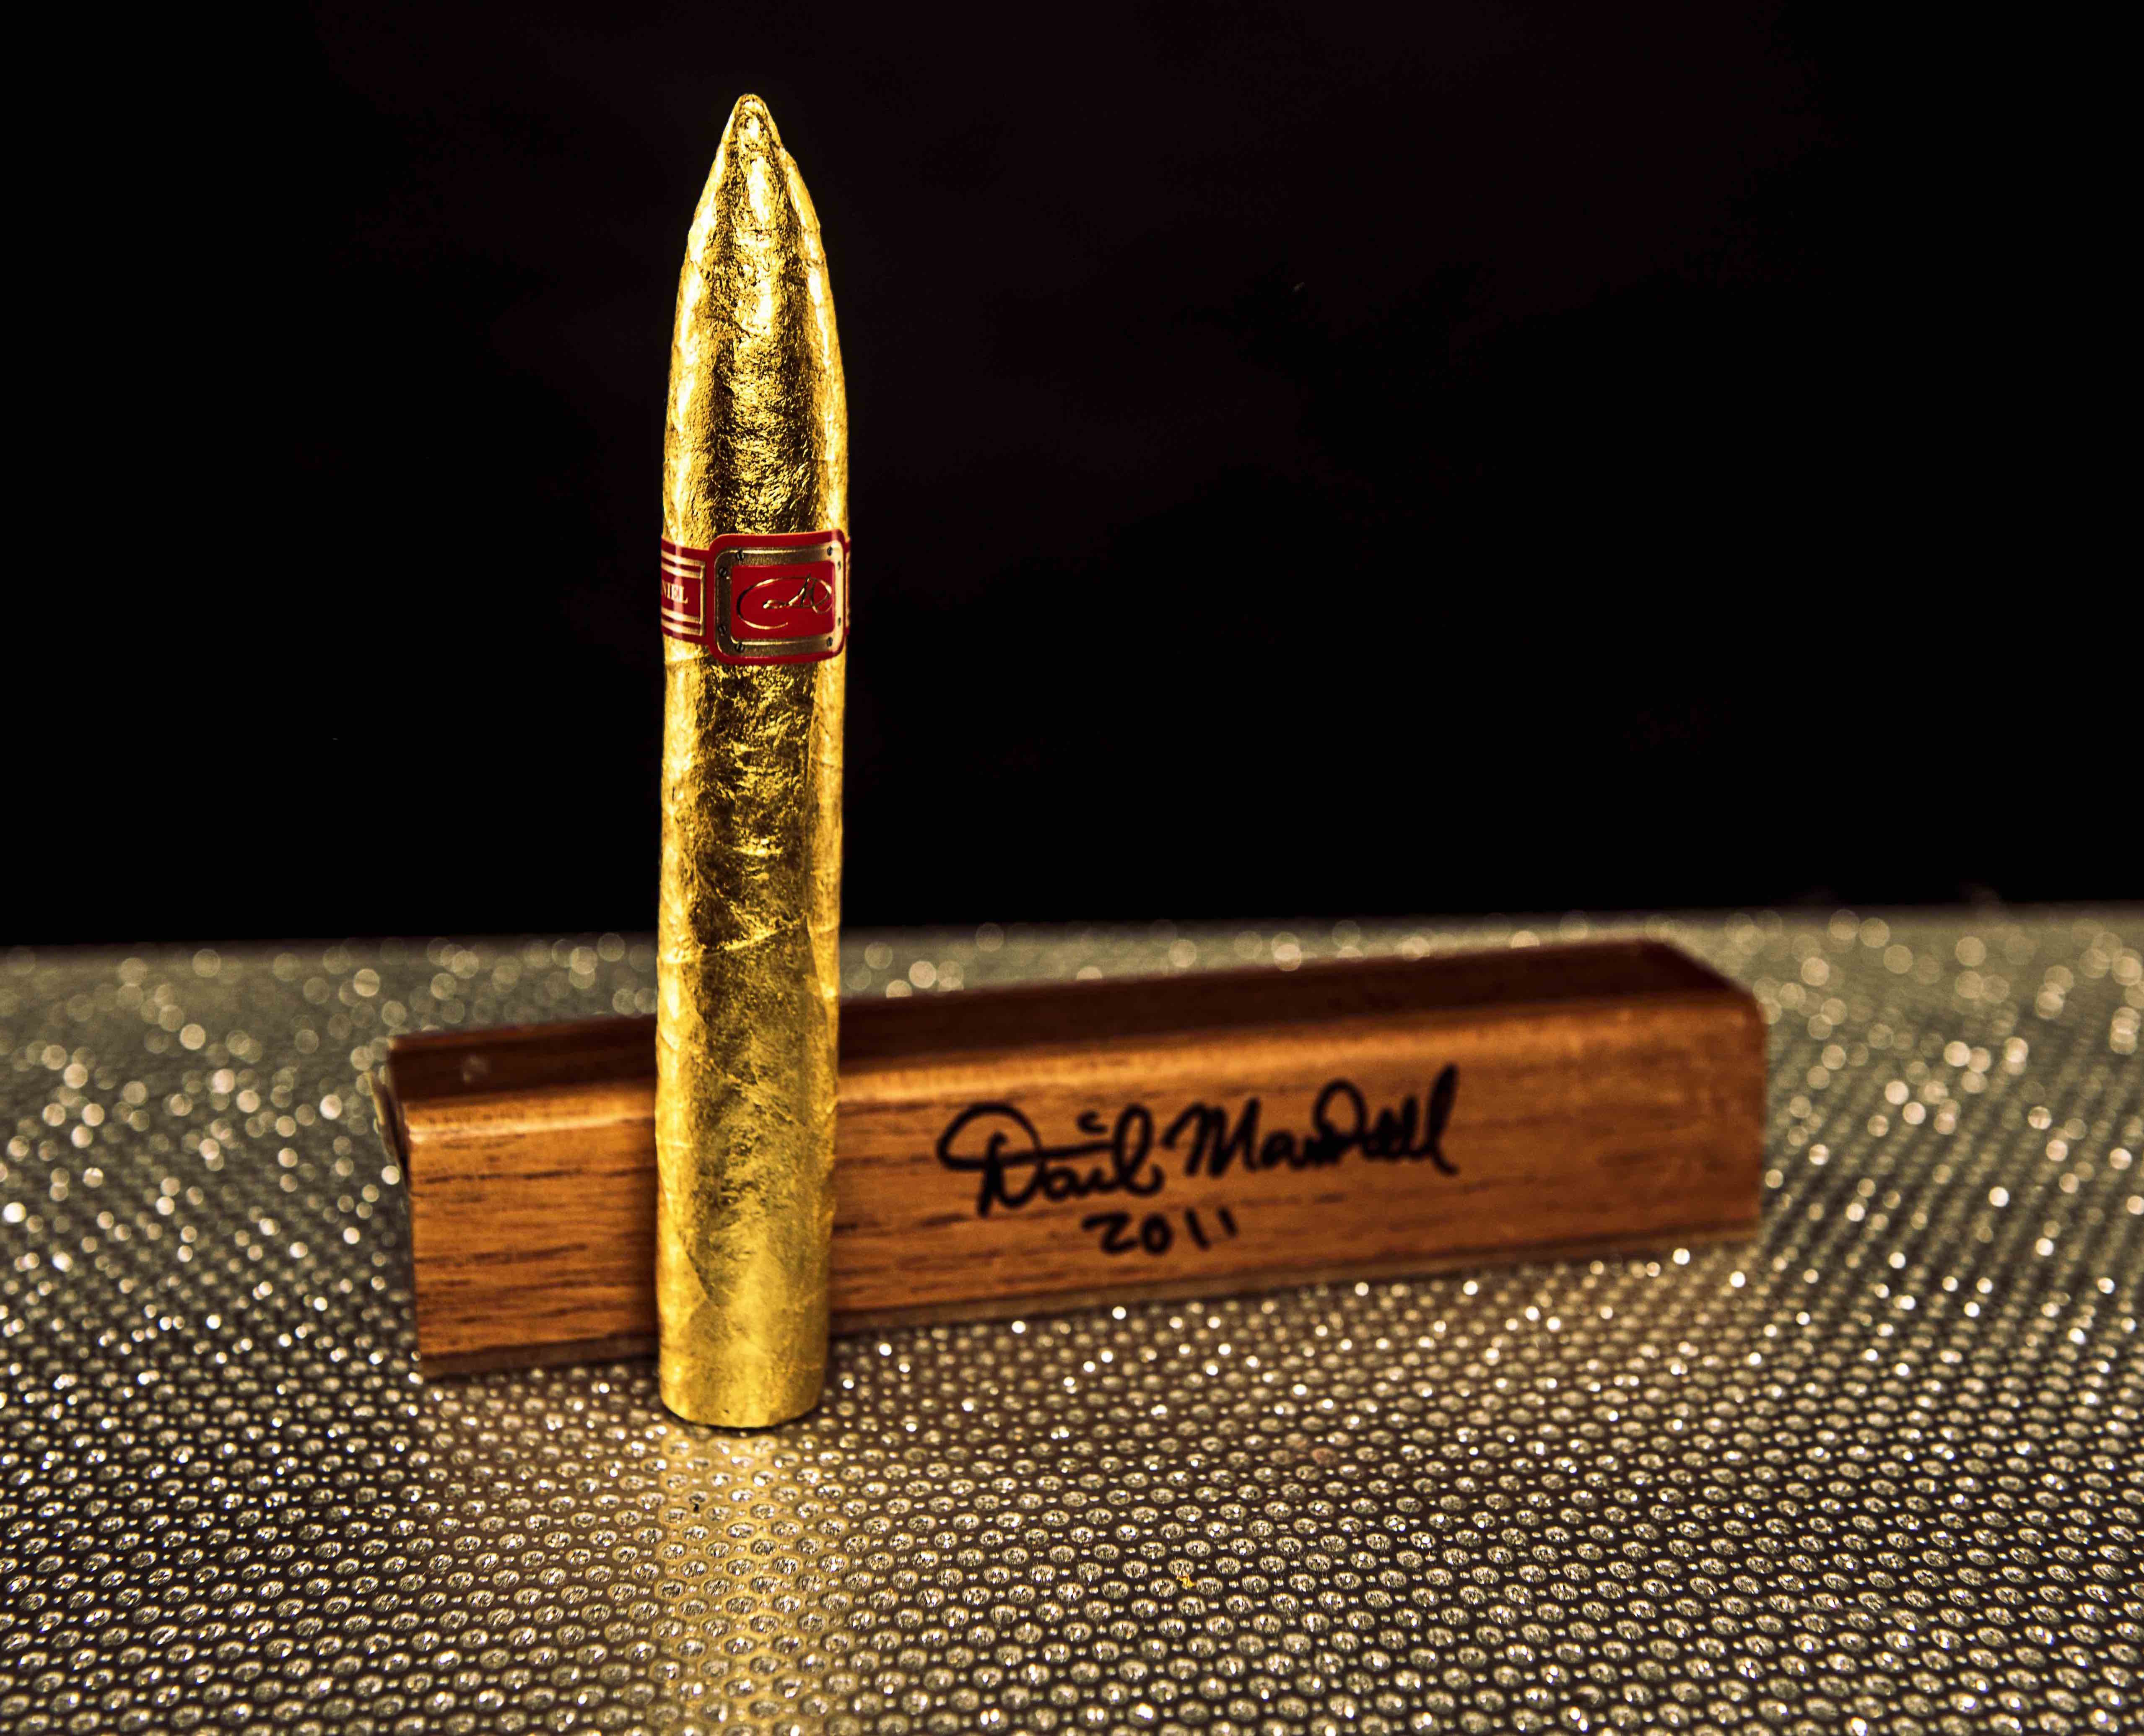 The Daniel Marshall 24kt Golden Torpedo Cigar